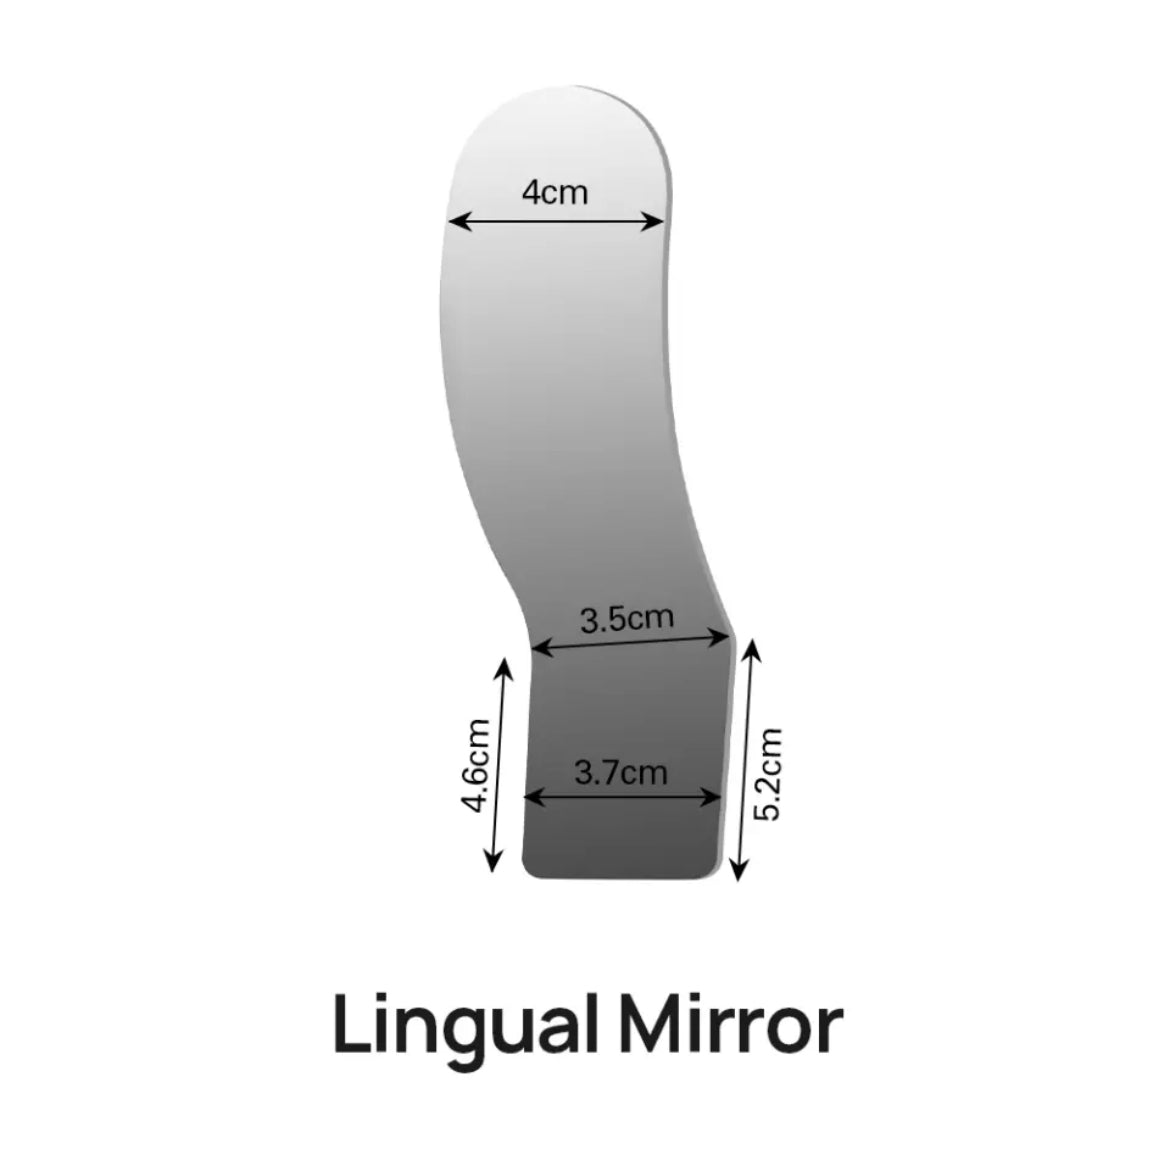 antifog mirror system for dental photographymz8qi